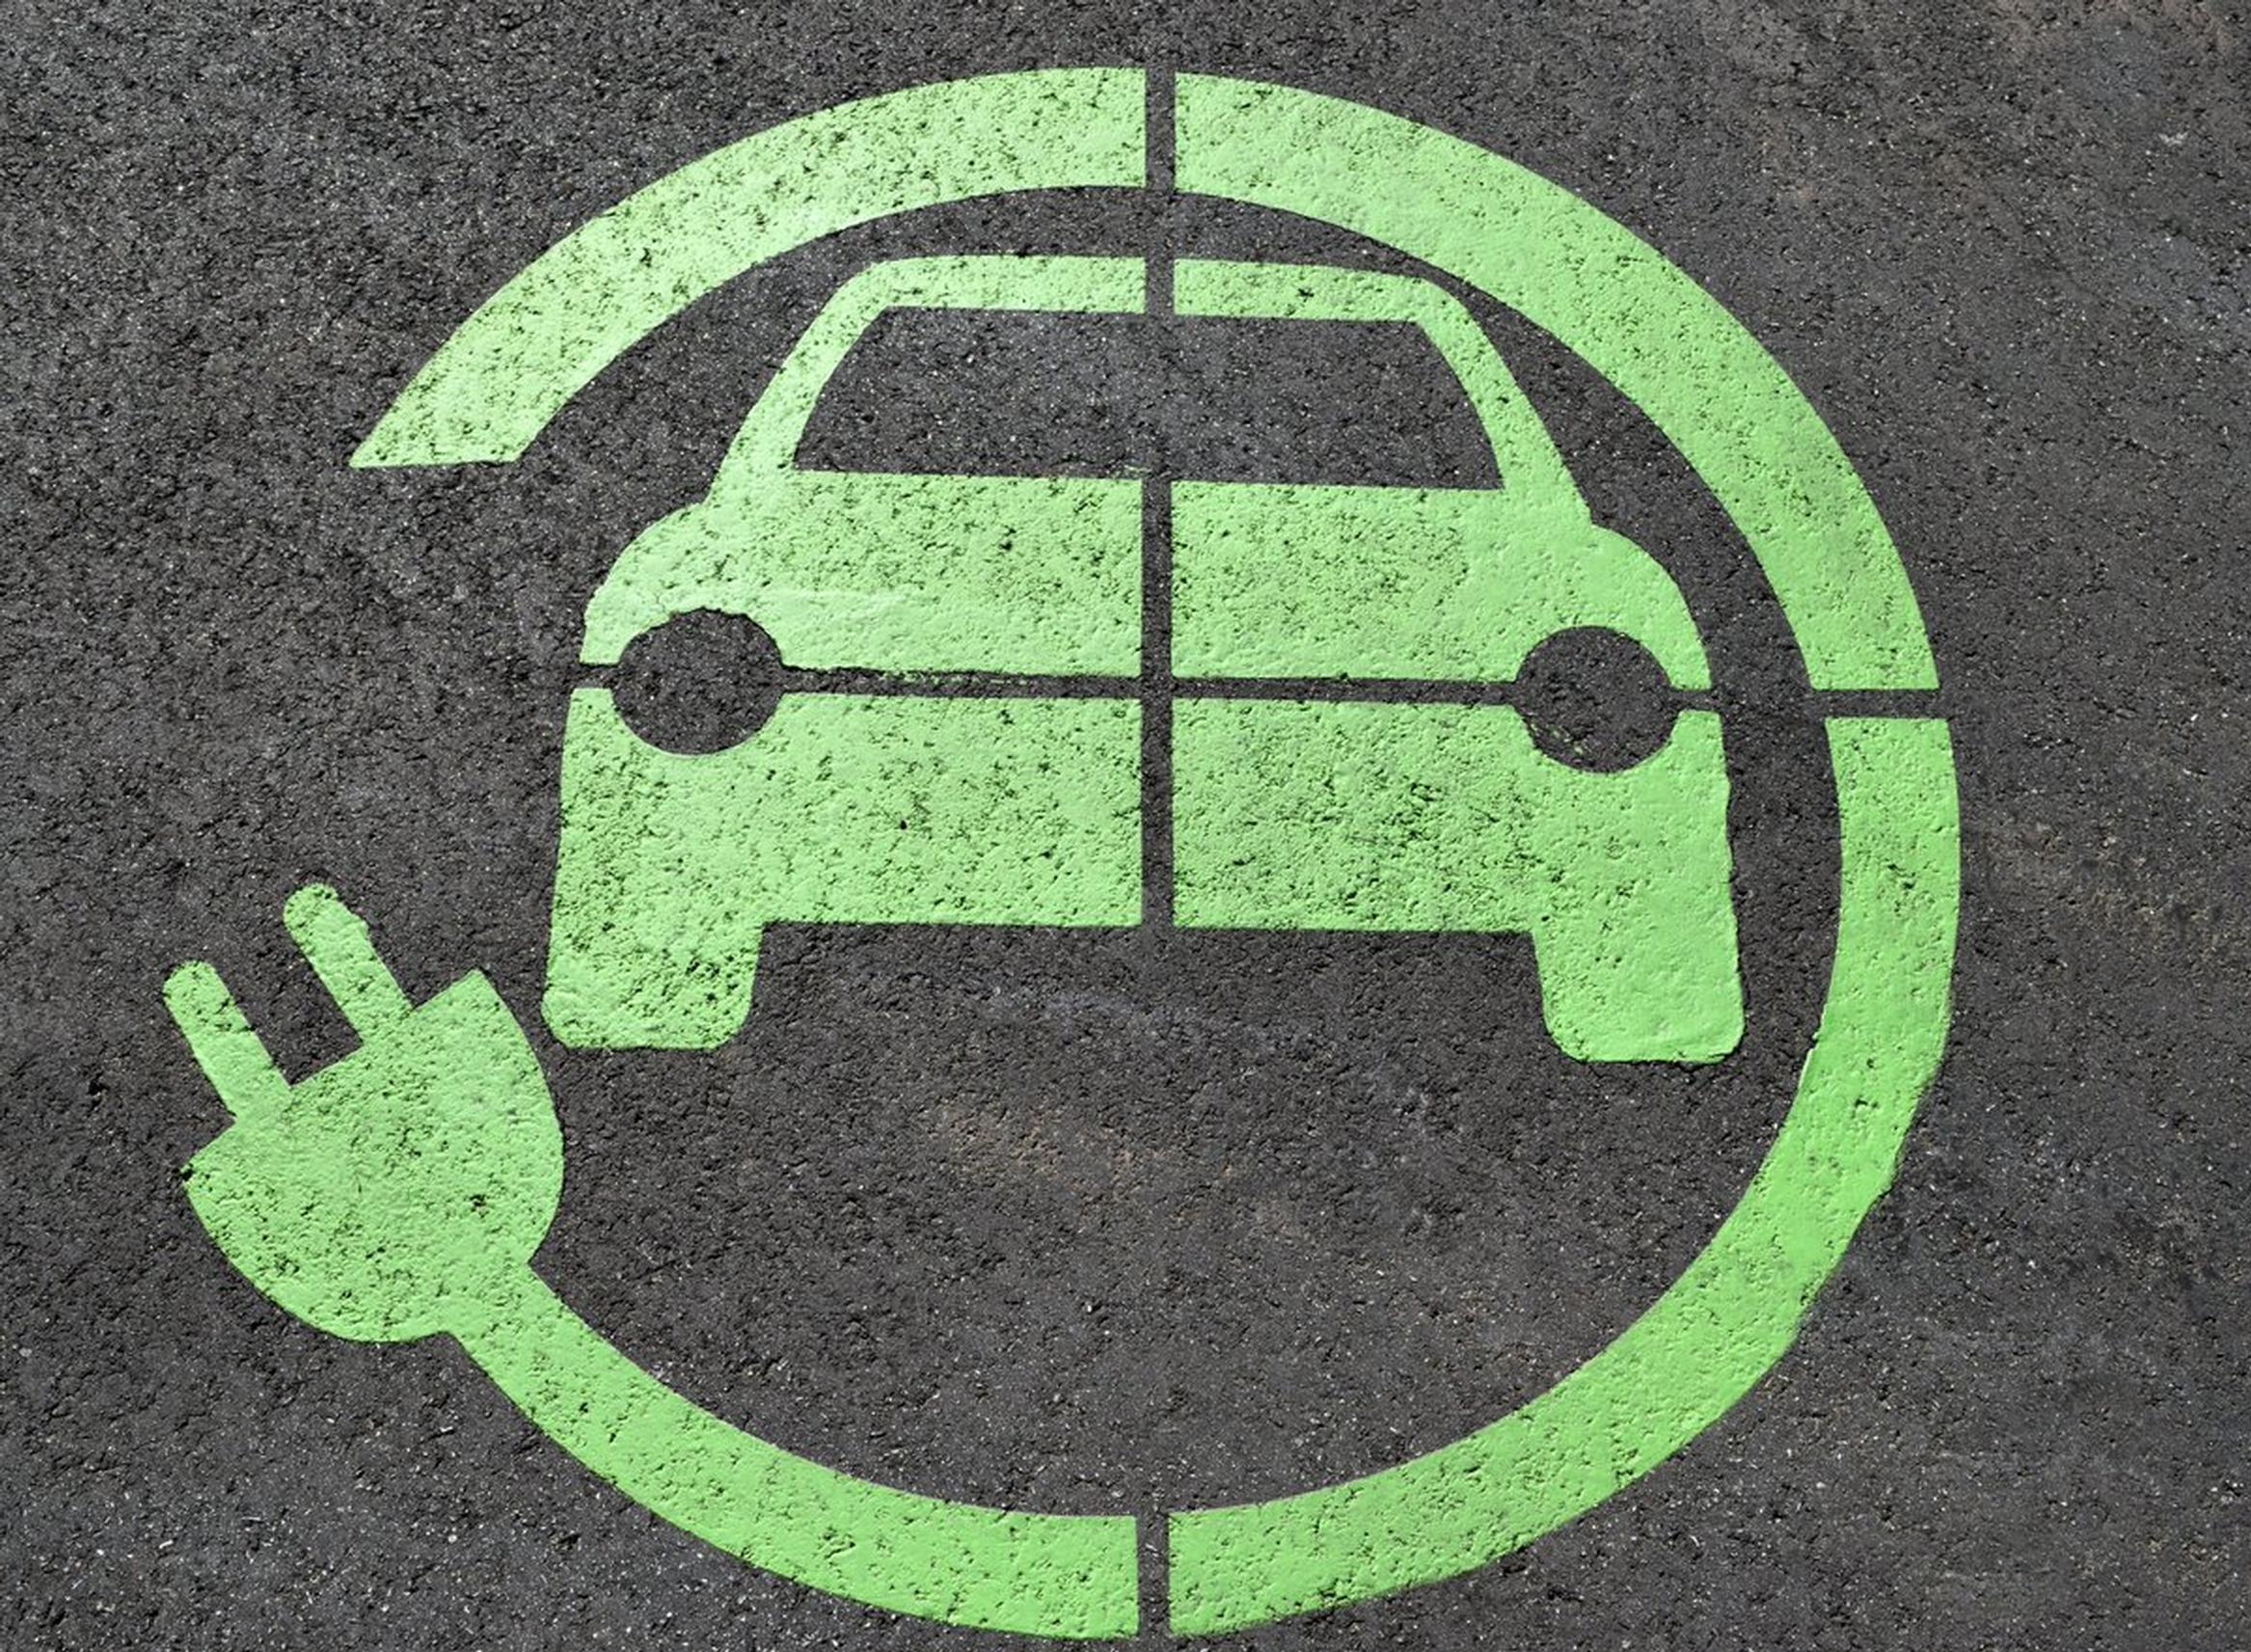 DMUK seeks views on accessible EV charging